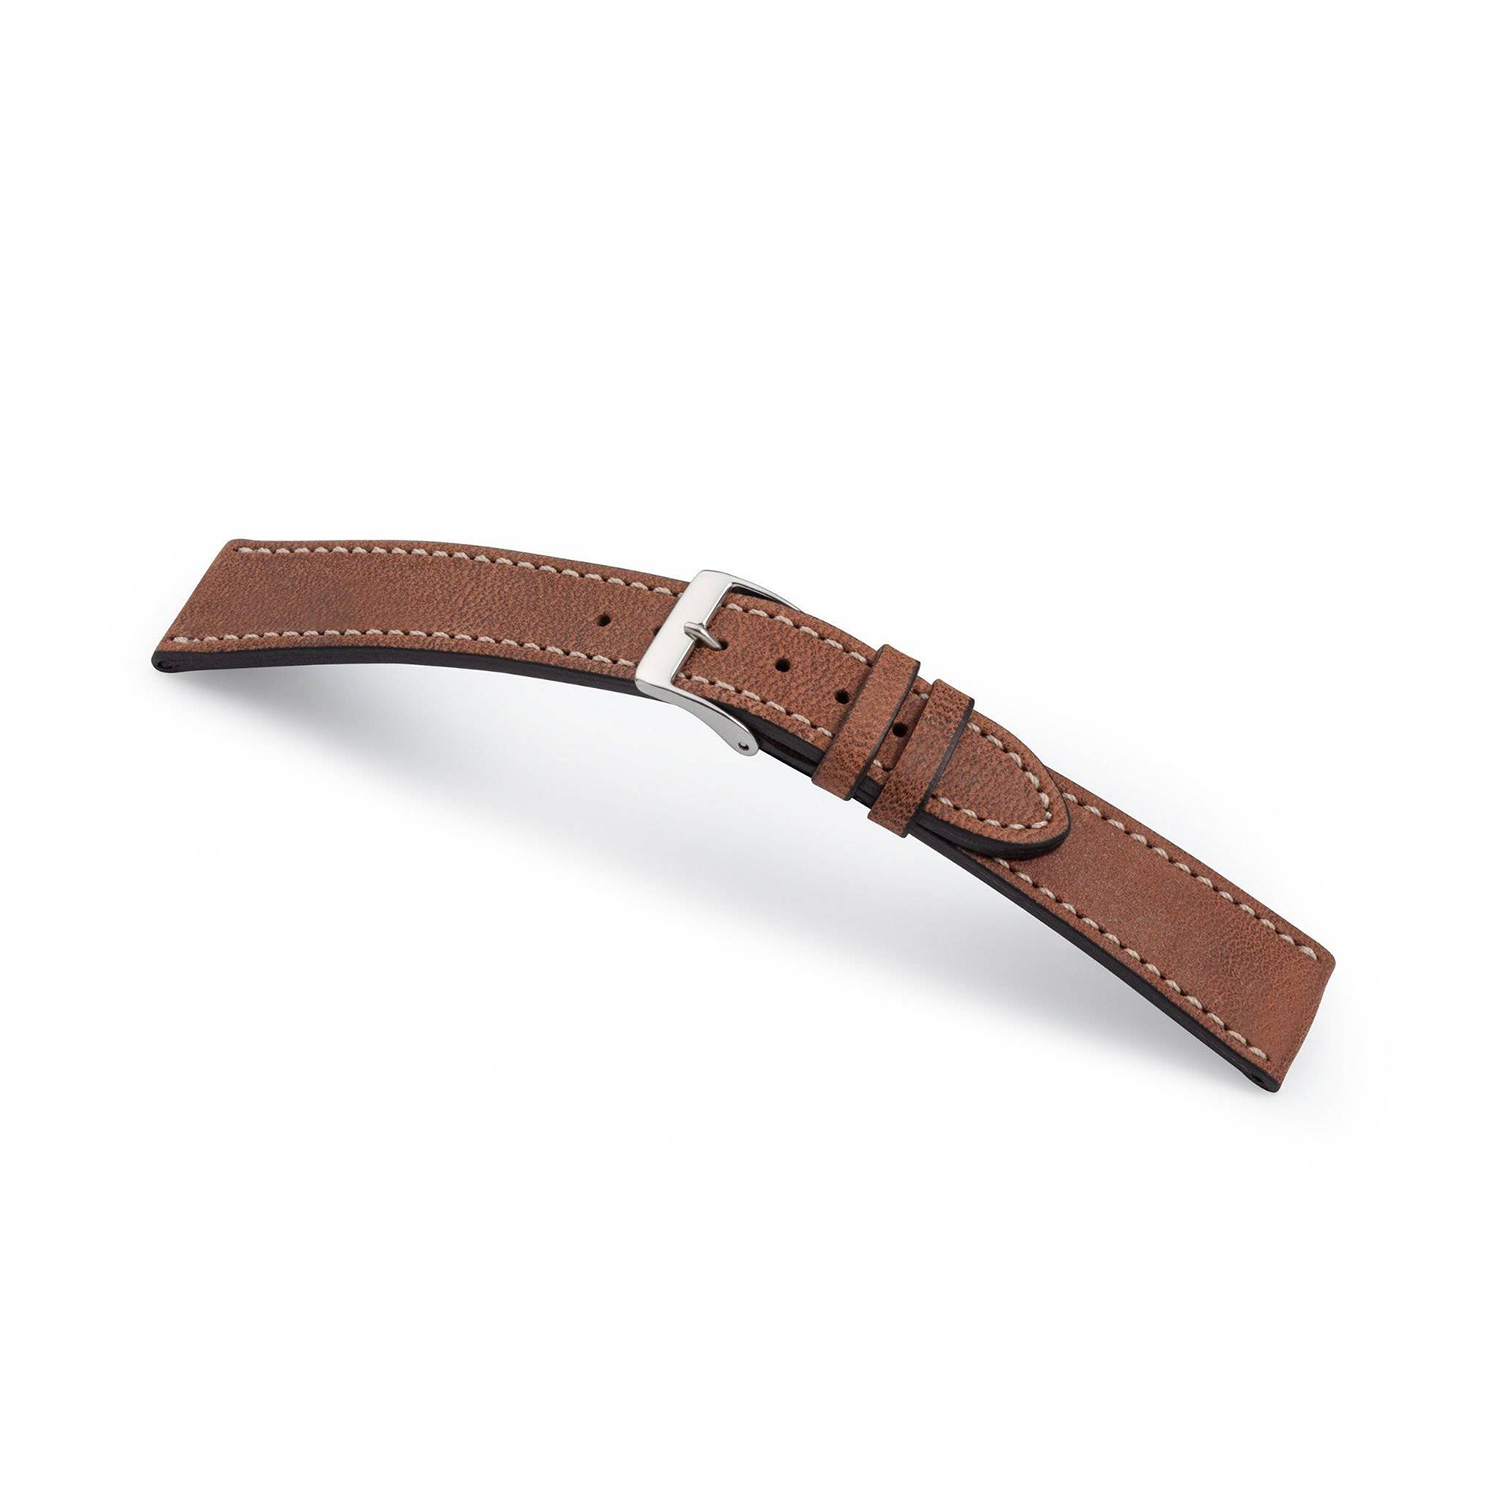 Manufakturwerk leather strap Hoheluft brown 18/16